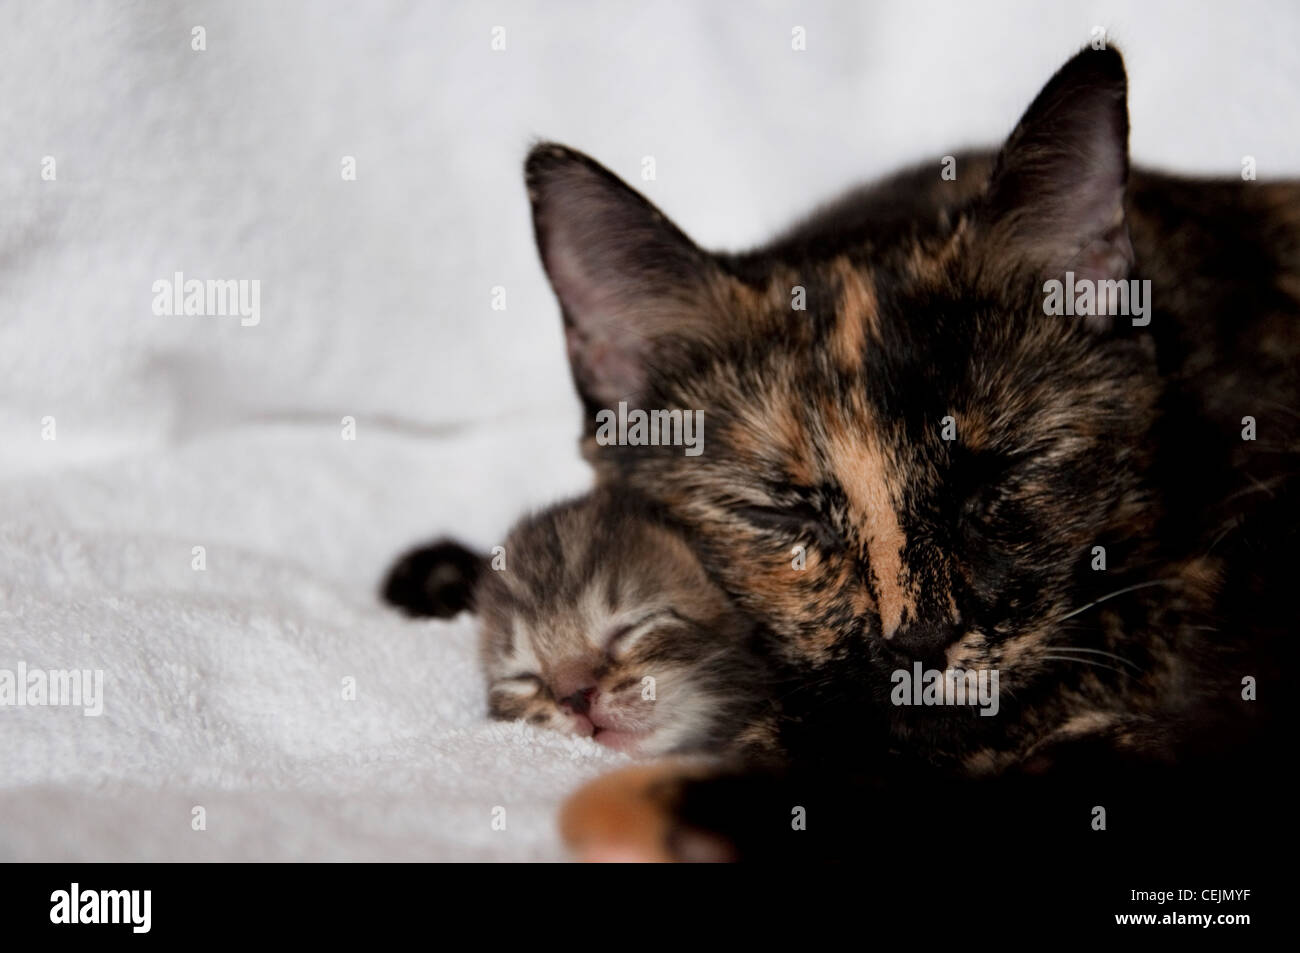 Madre felino con gatito recién nacido Foto de stock